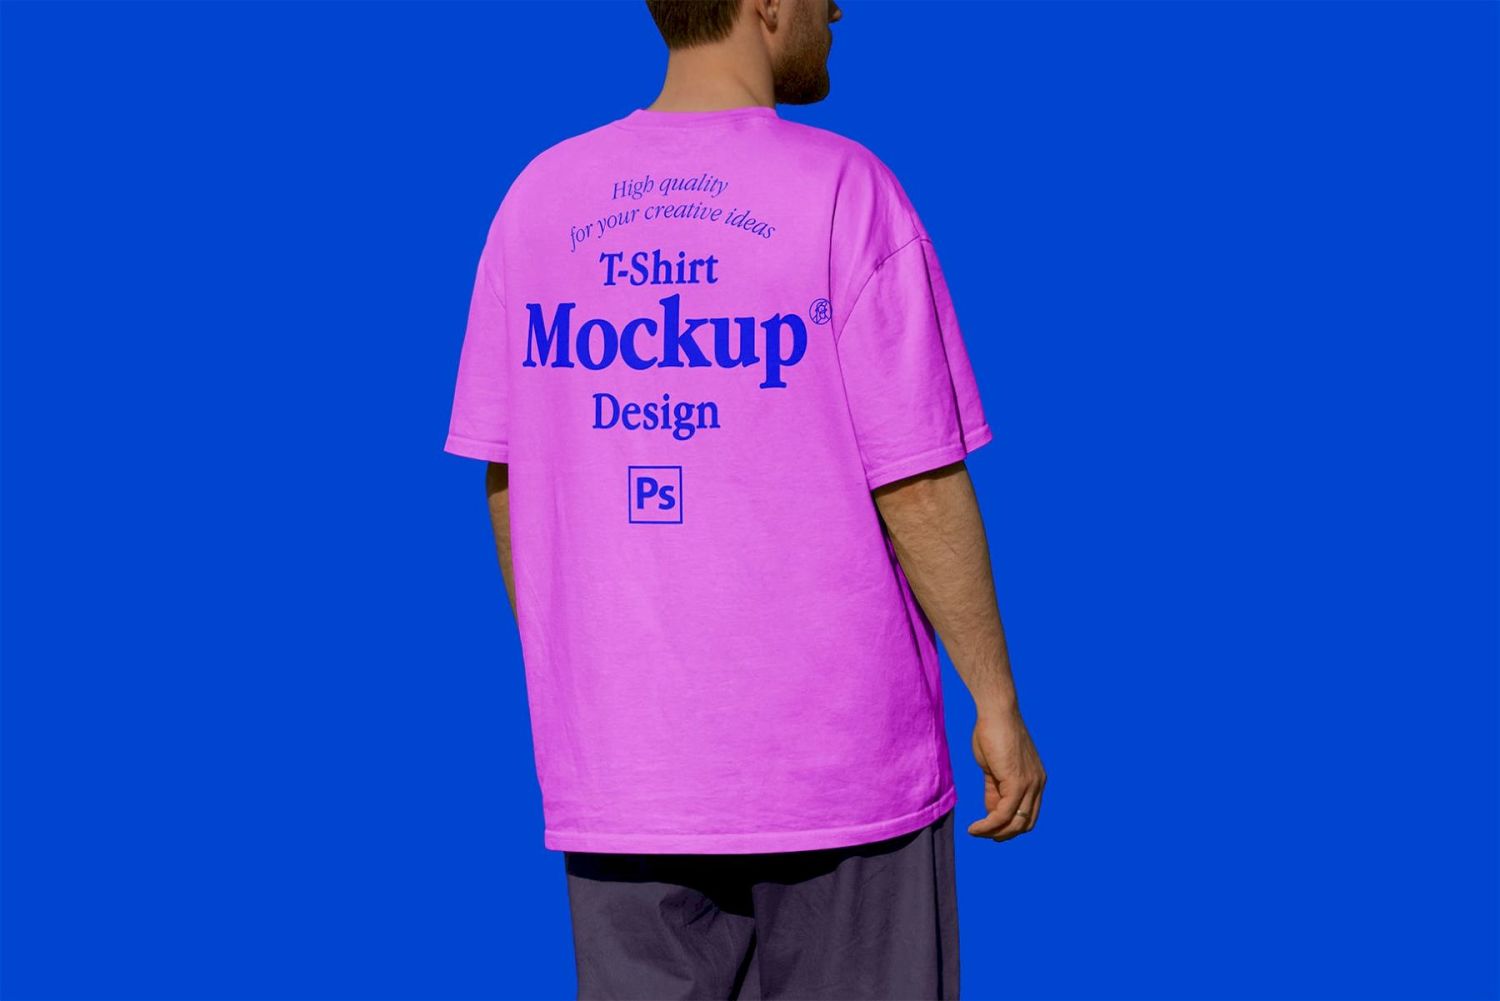 T 恤样机设计 T-shirt Mock-up Design插图